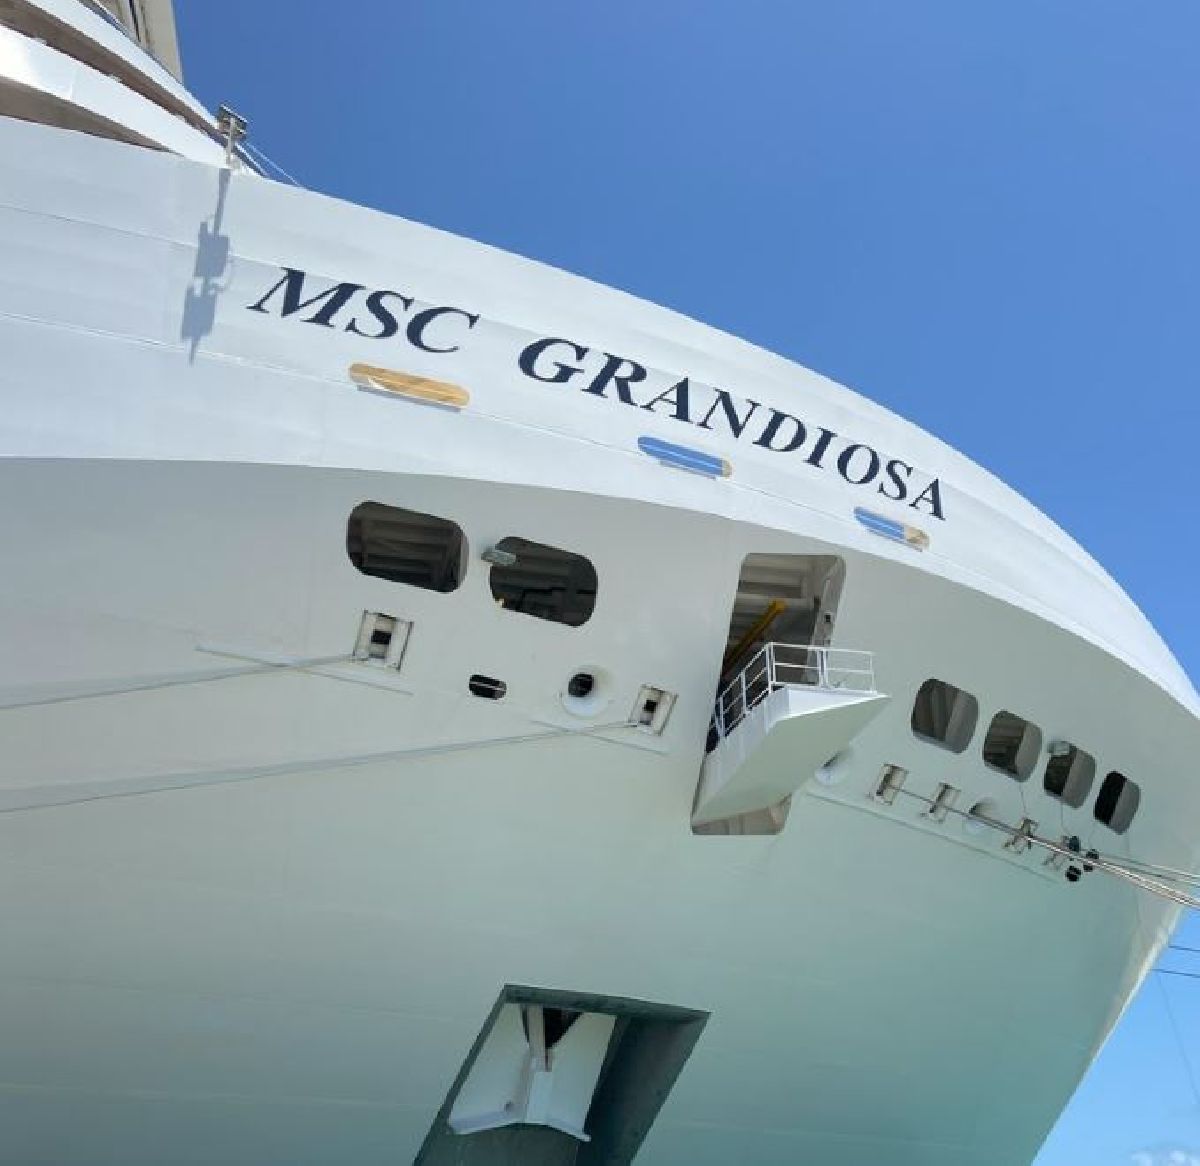 Chega ao Brasil o MSC Grandiosa, o maior navio de cruzeiros da história a navegar no país